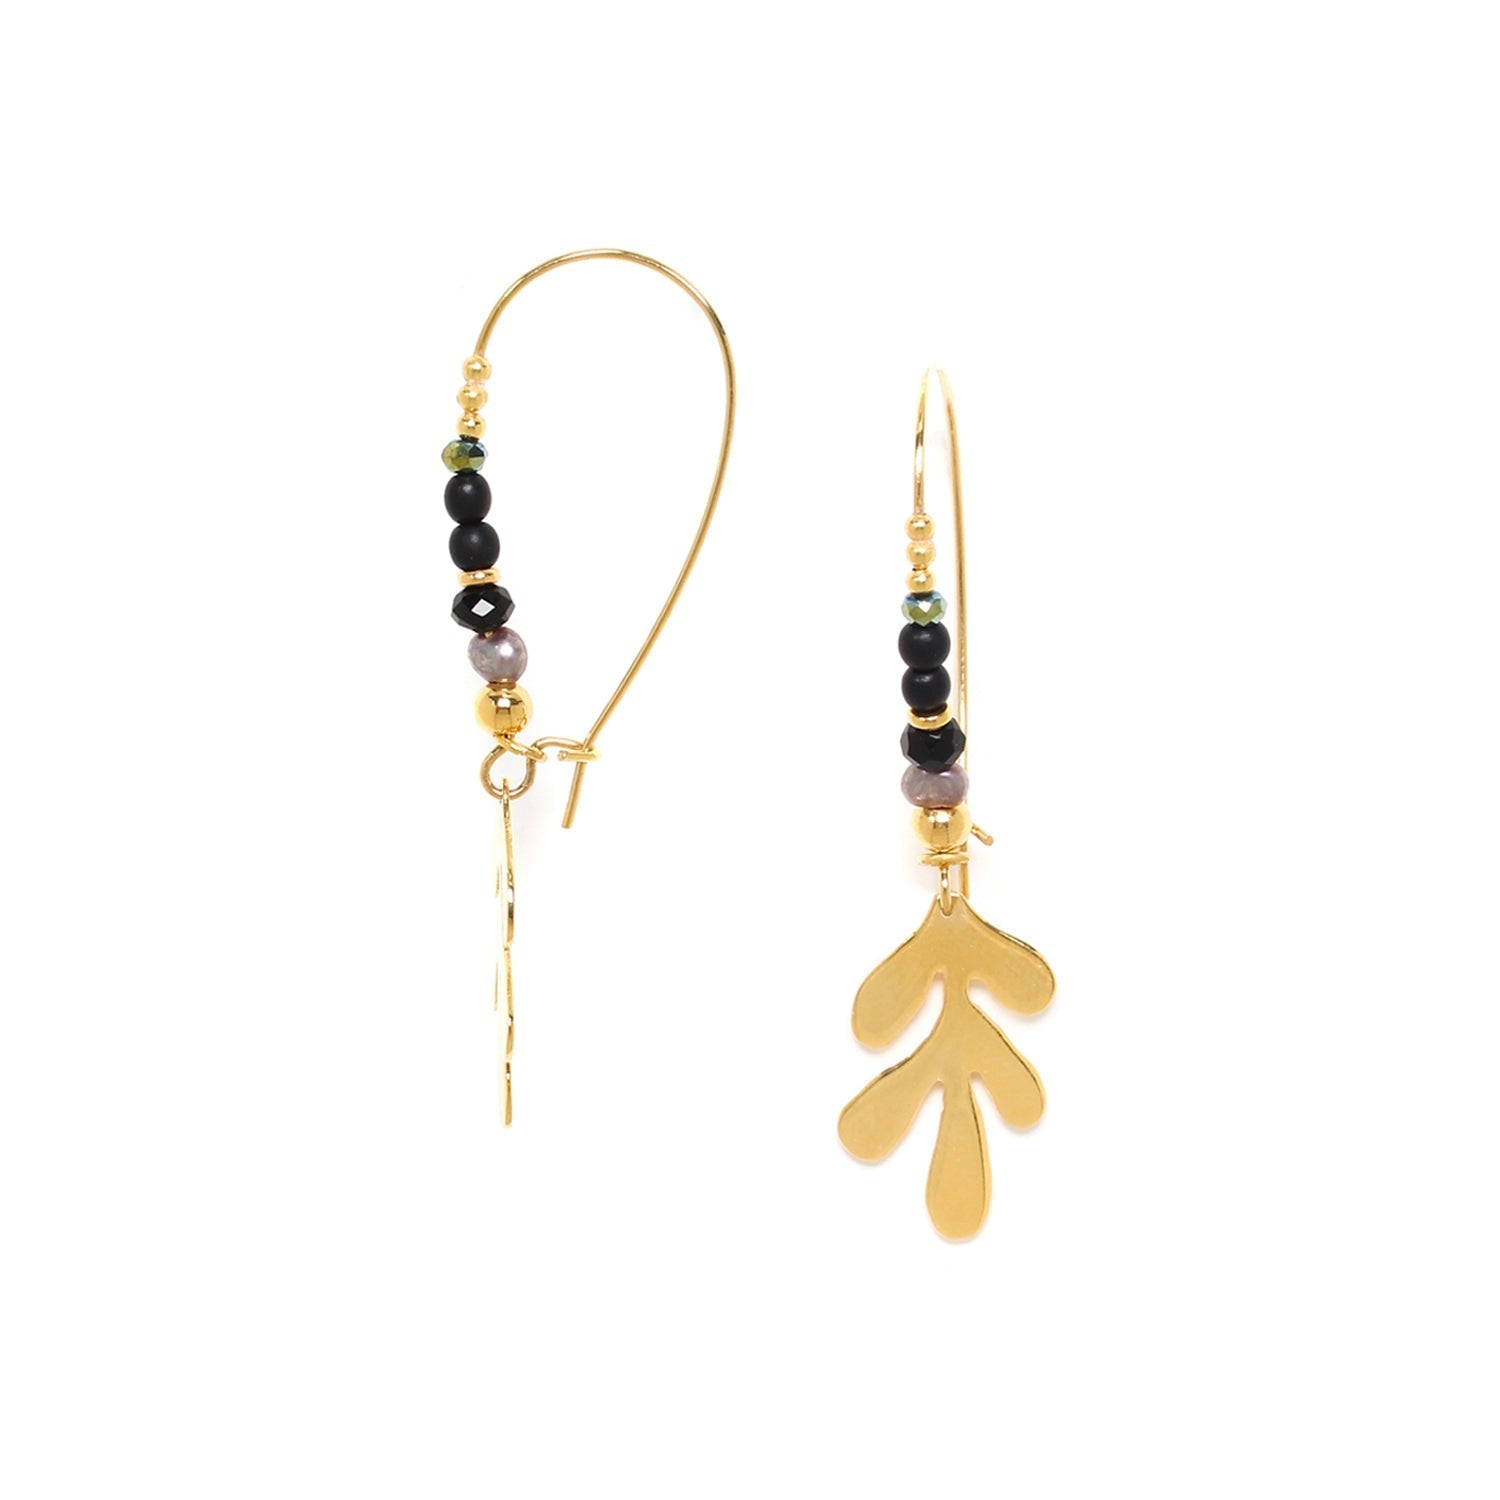 Julia Long Earrings - The Nancy Smillie Shop - Art, Jewellery & Designer Gifts Glasgow